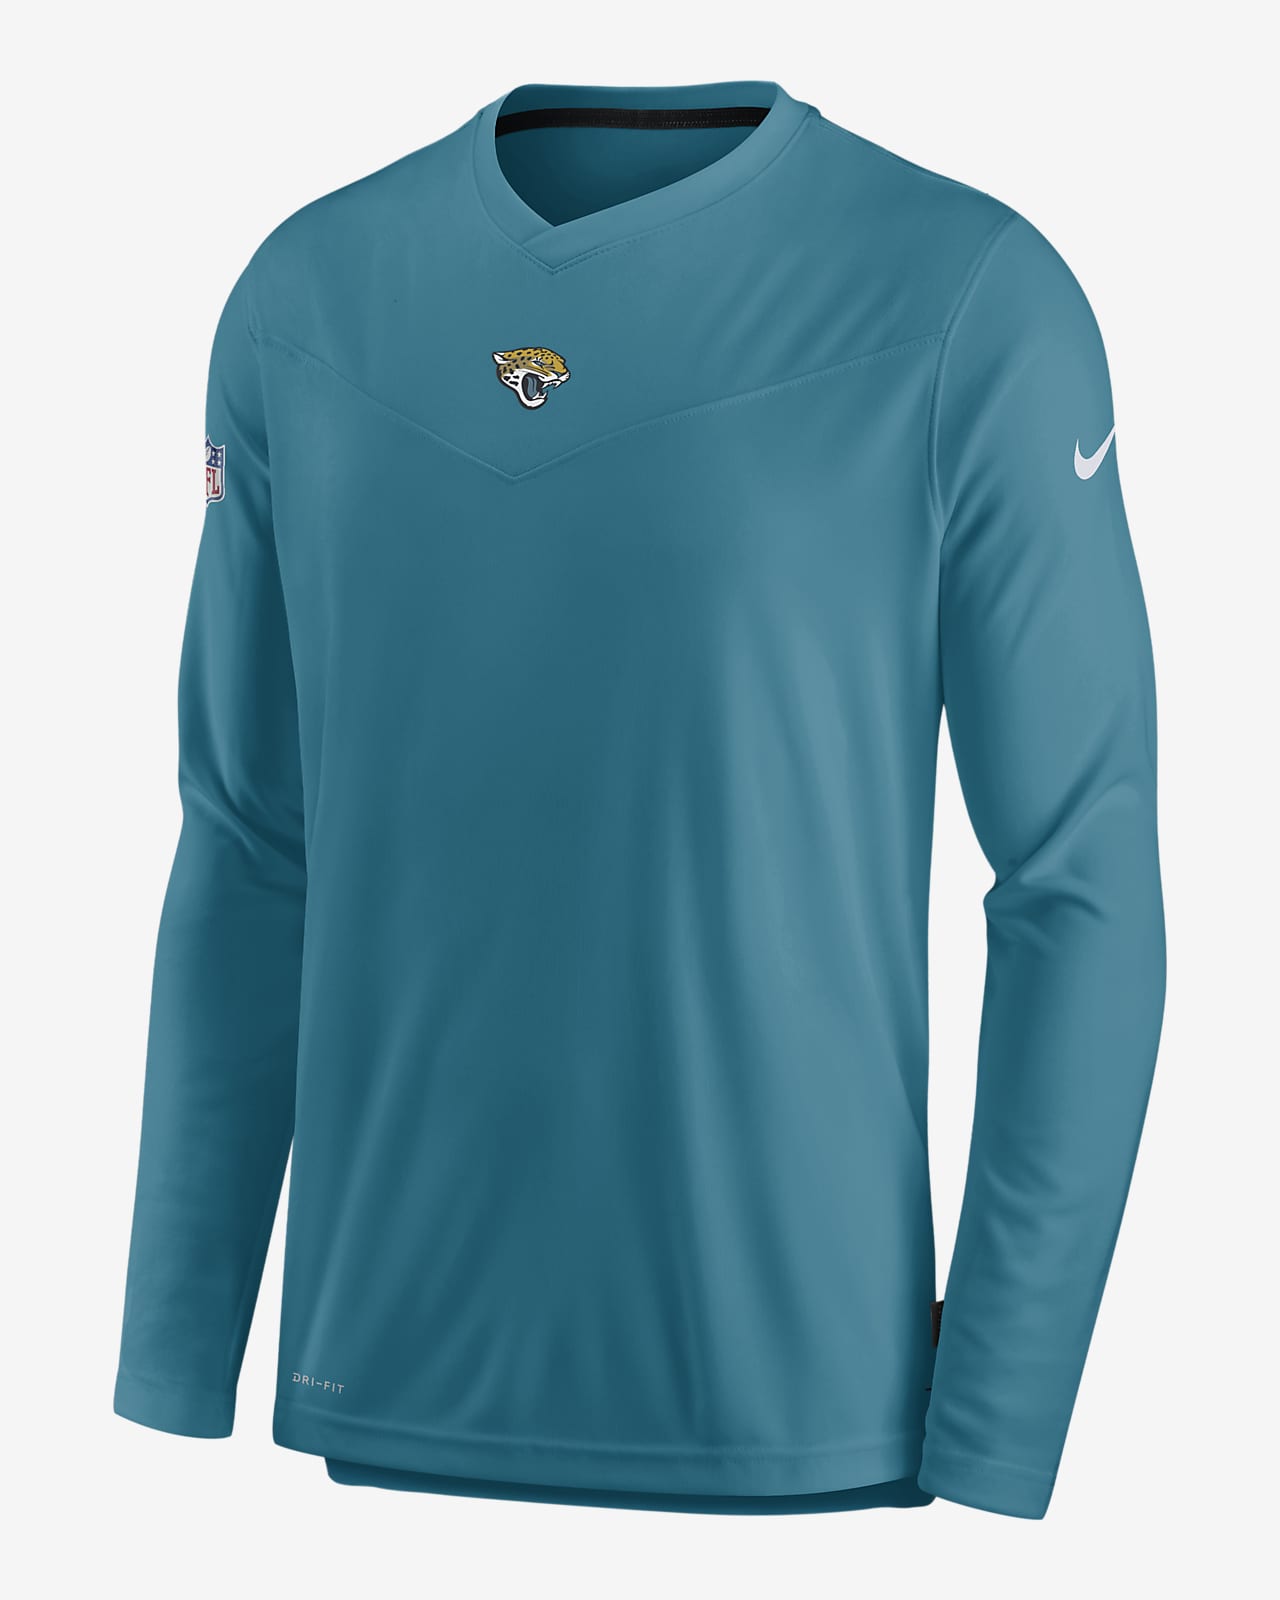 Jacksonville Jaguars man sweatshirts